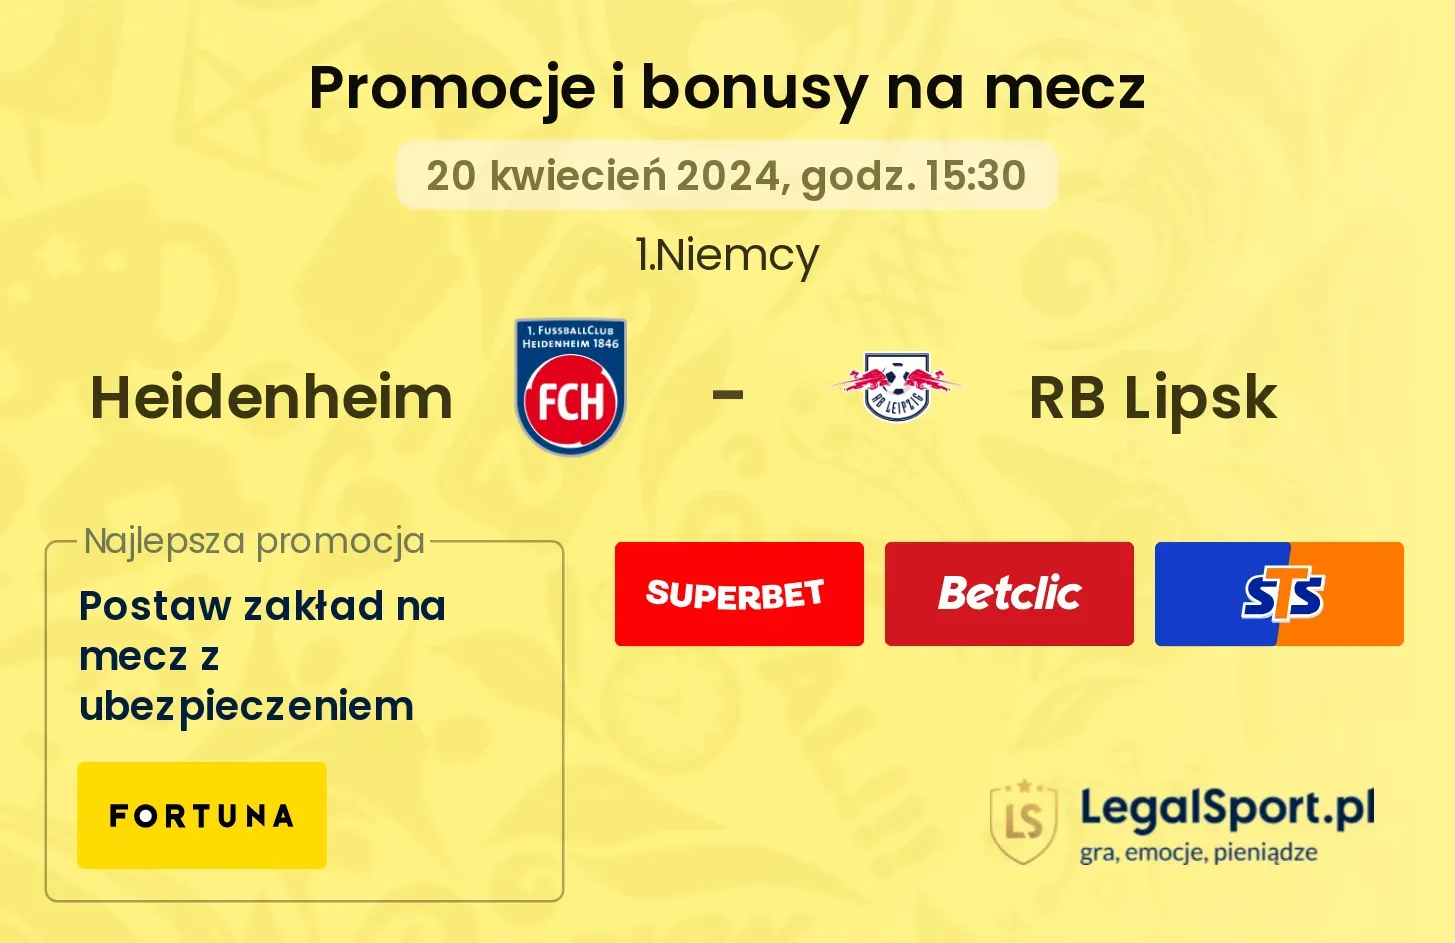 Heidenheim - RB Lipsk promocje bonusy na mecz